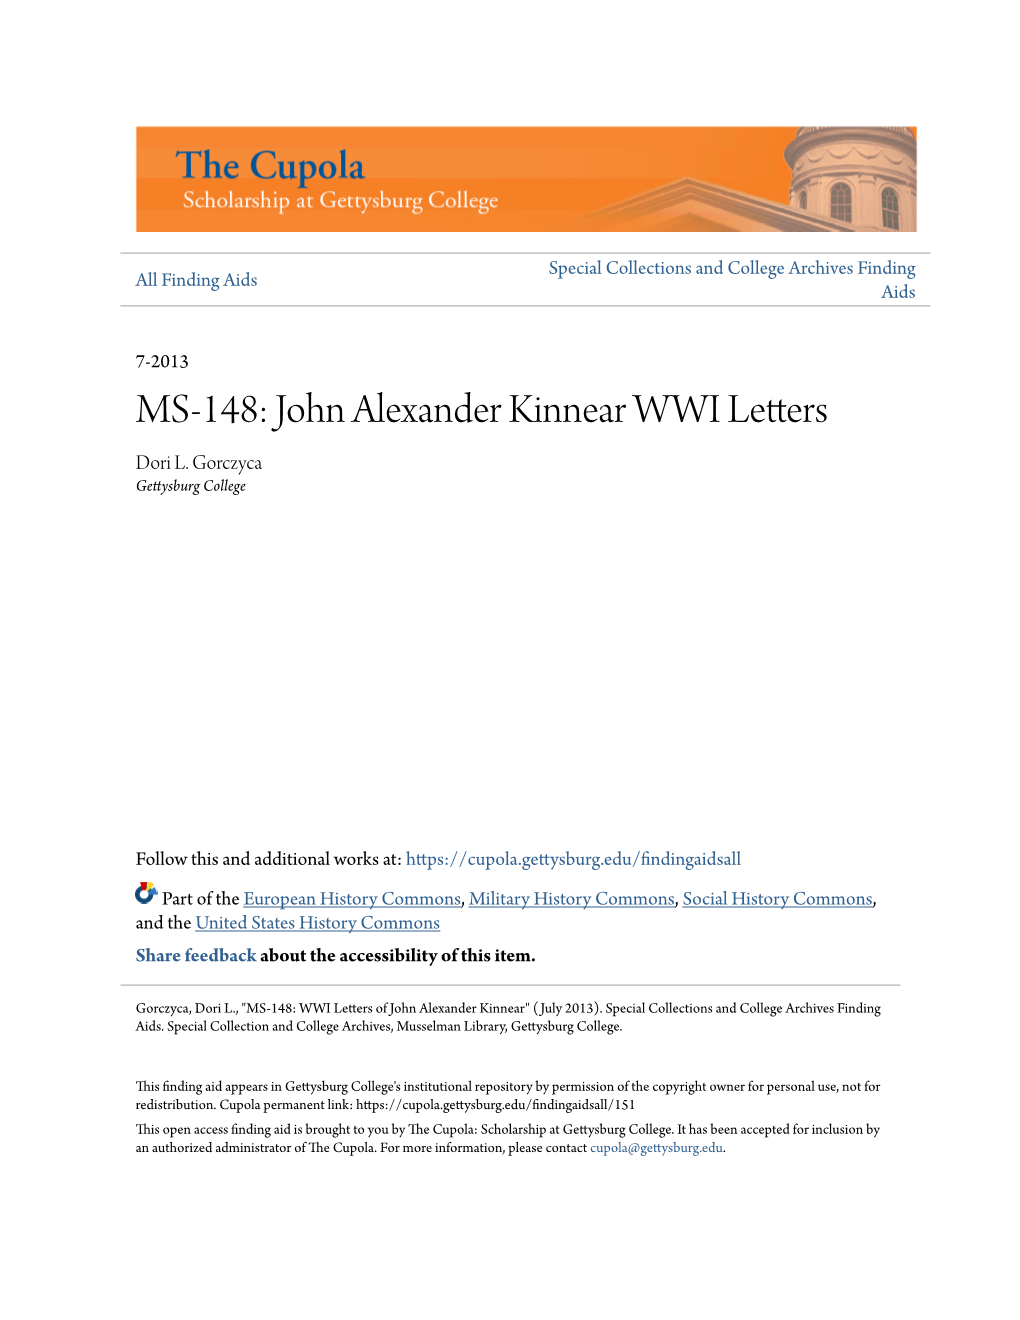 MS-148: John Alexander Kinnear WWI Letters Dori L